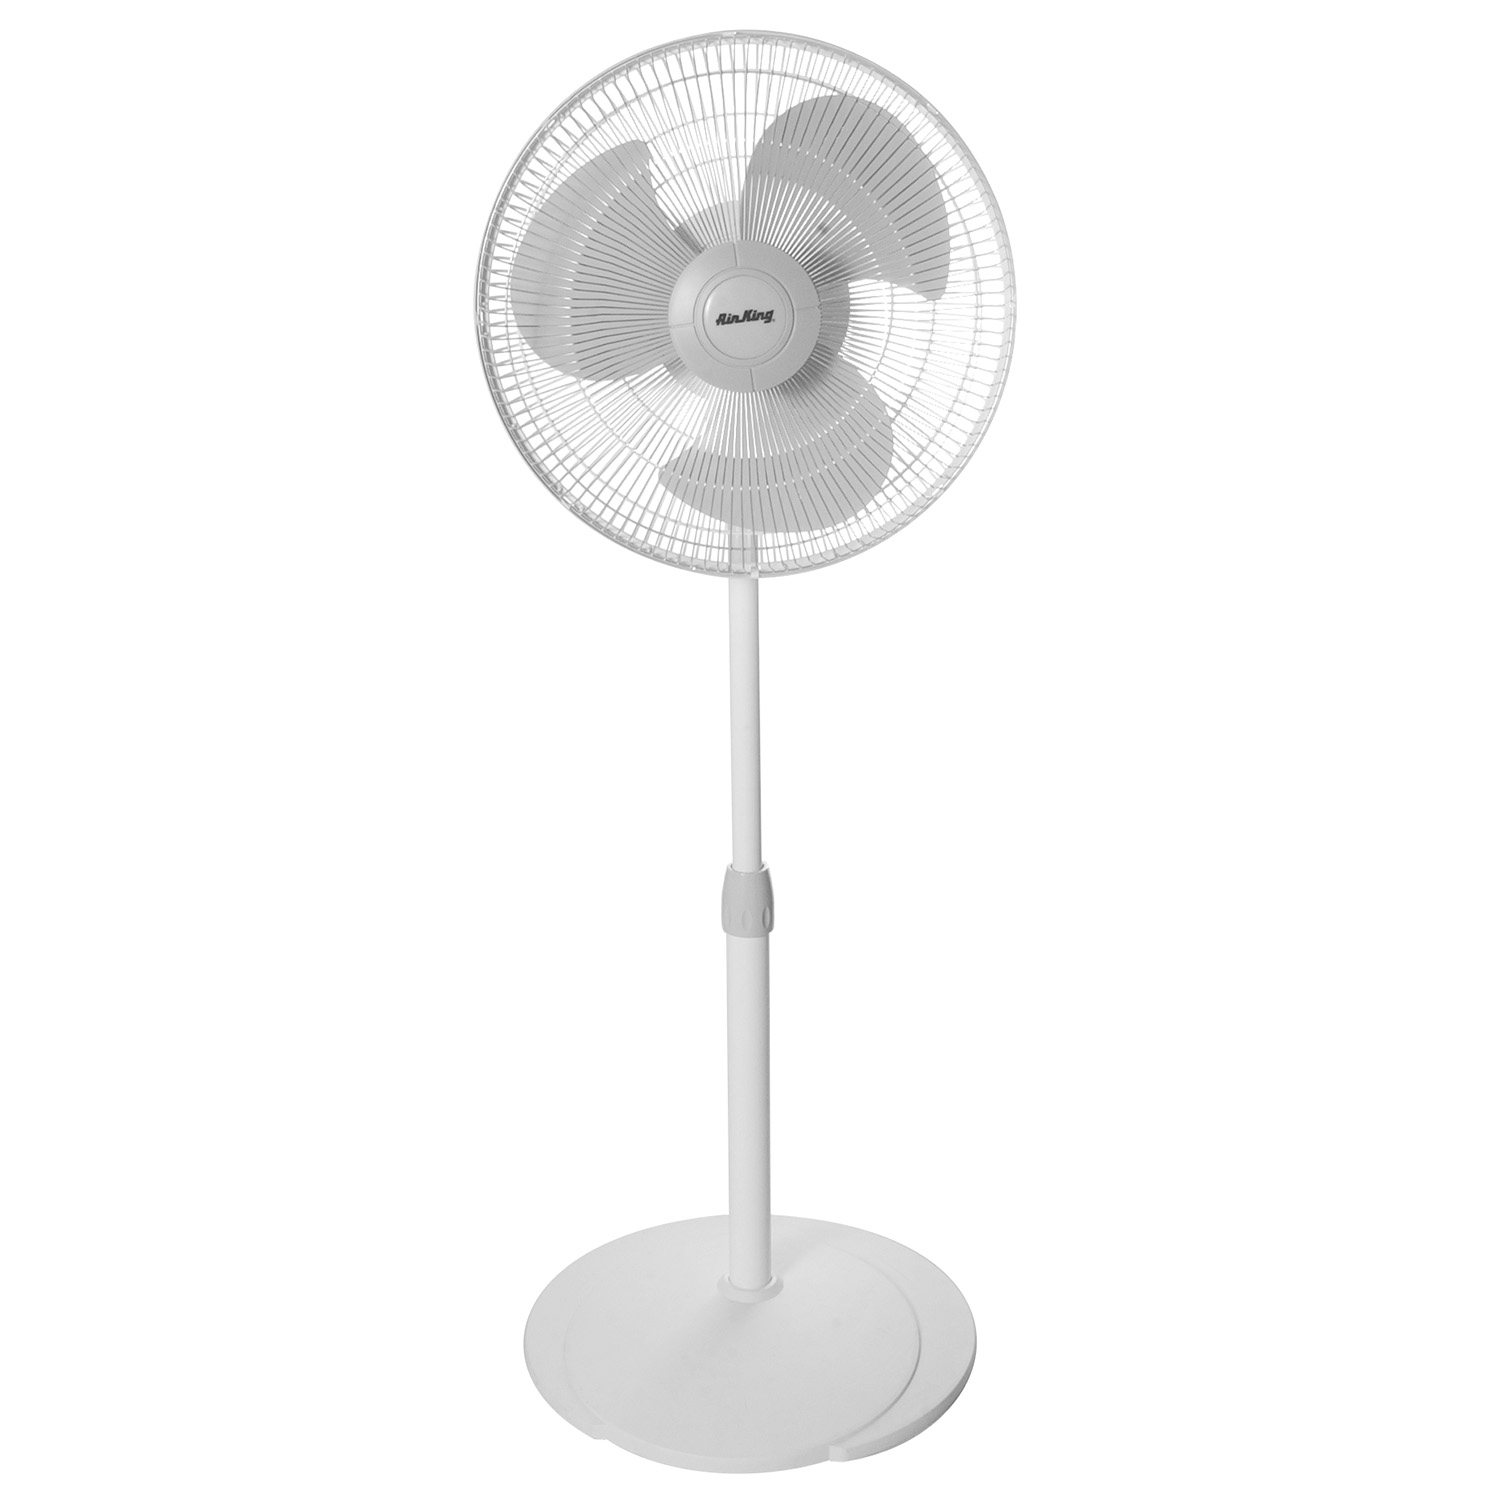 Lasko Pedestal Fan (9126C) - 3 speed Pedestal Fan, 90 Degree Oscillation